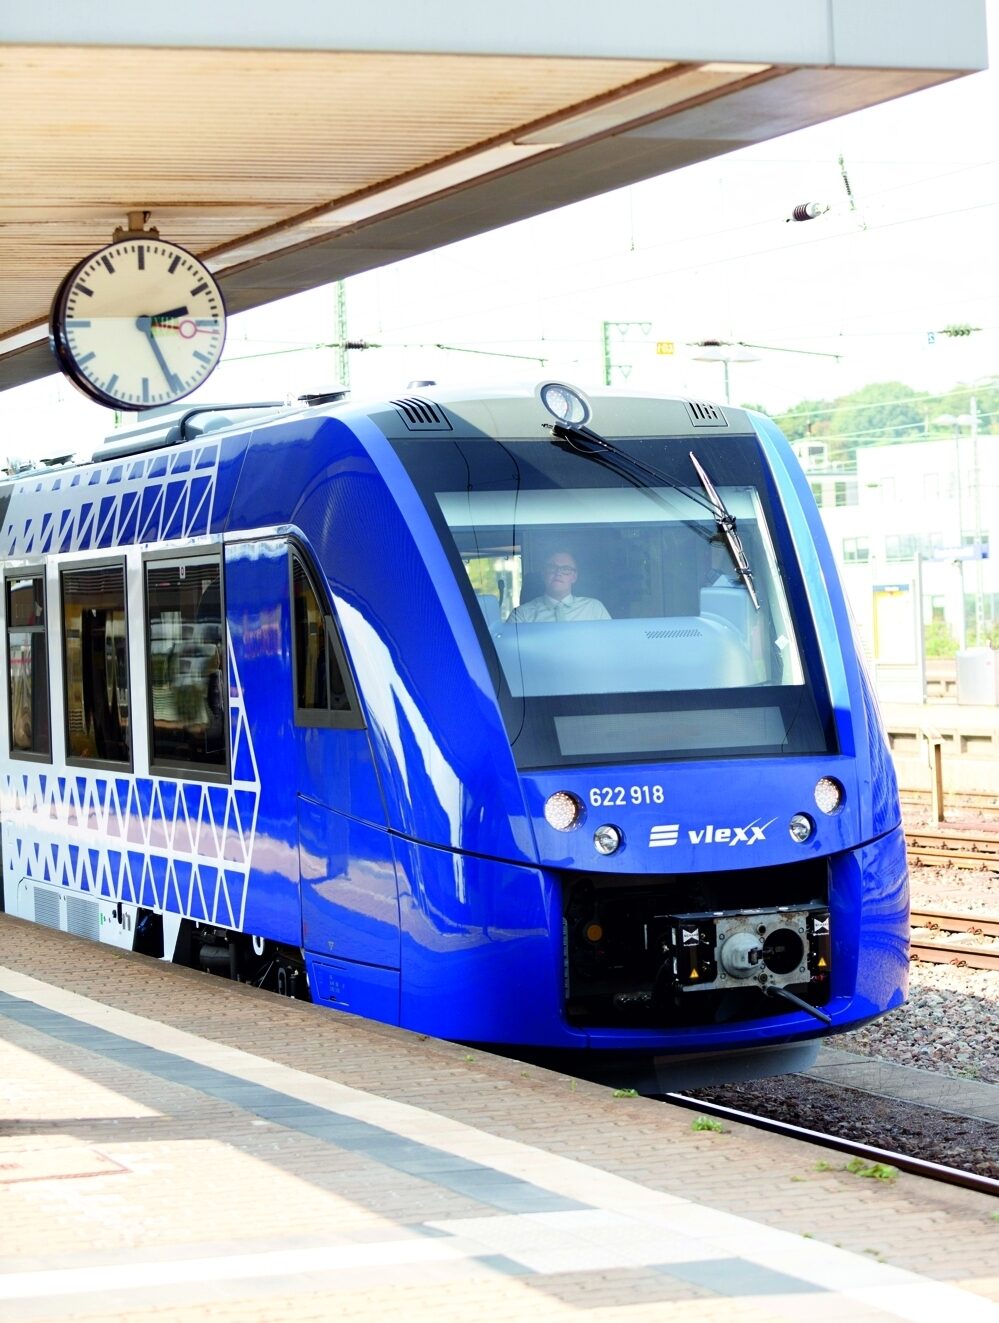 Ein blauer Zug von vlexx steht an einem Bahnhof an einem Bahnsteig. Darüber eine Uhr, die die Uhrzeit 14 Uhr 25 anzeigt.